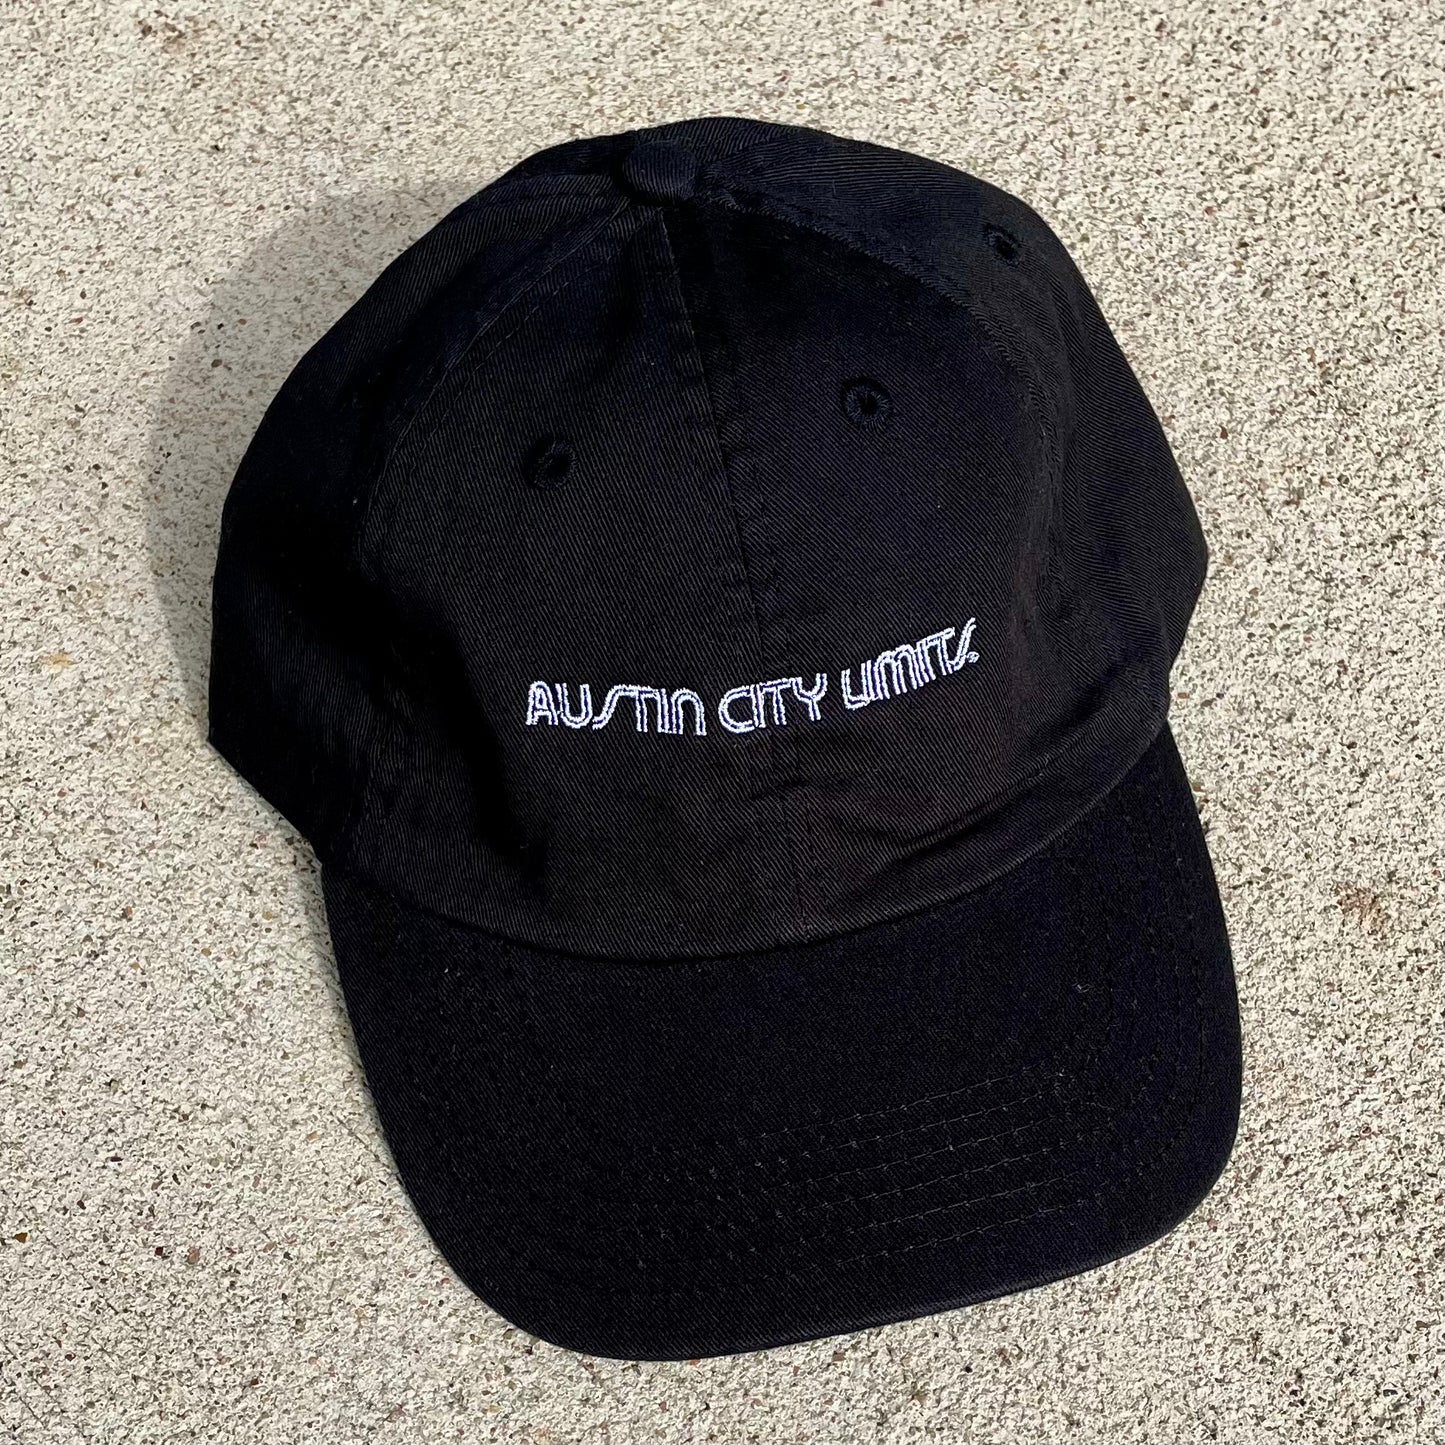 AUSTIN CITY LIMITS DAD CAP